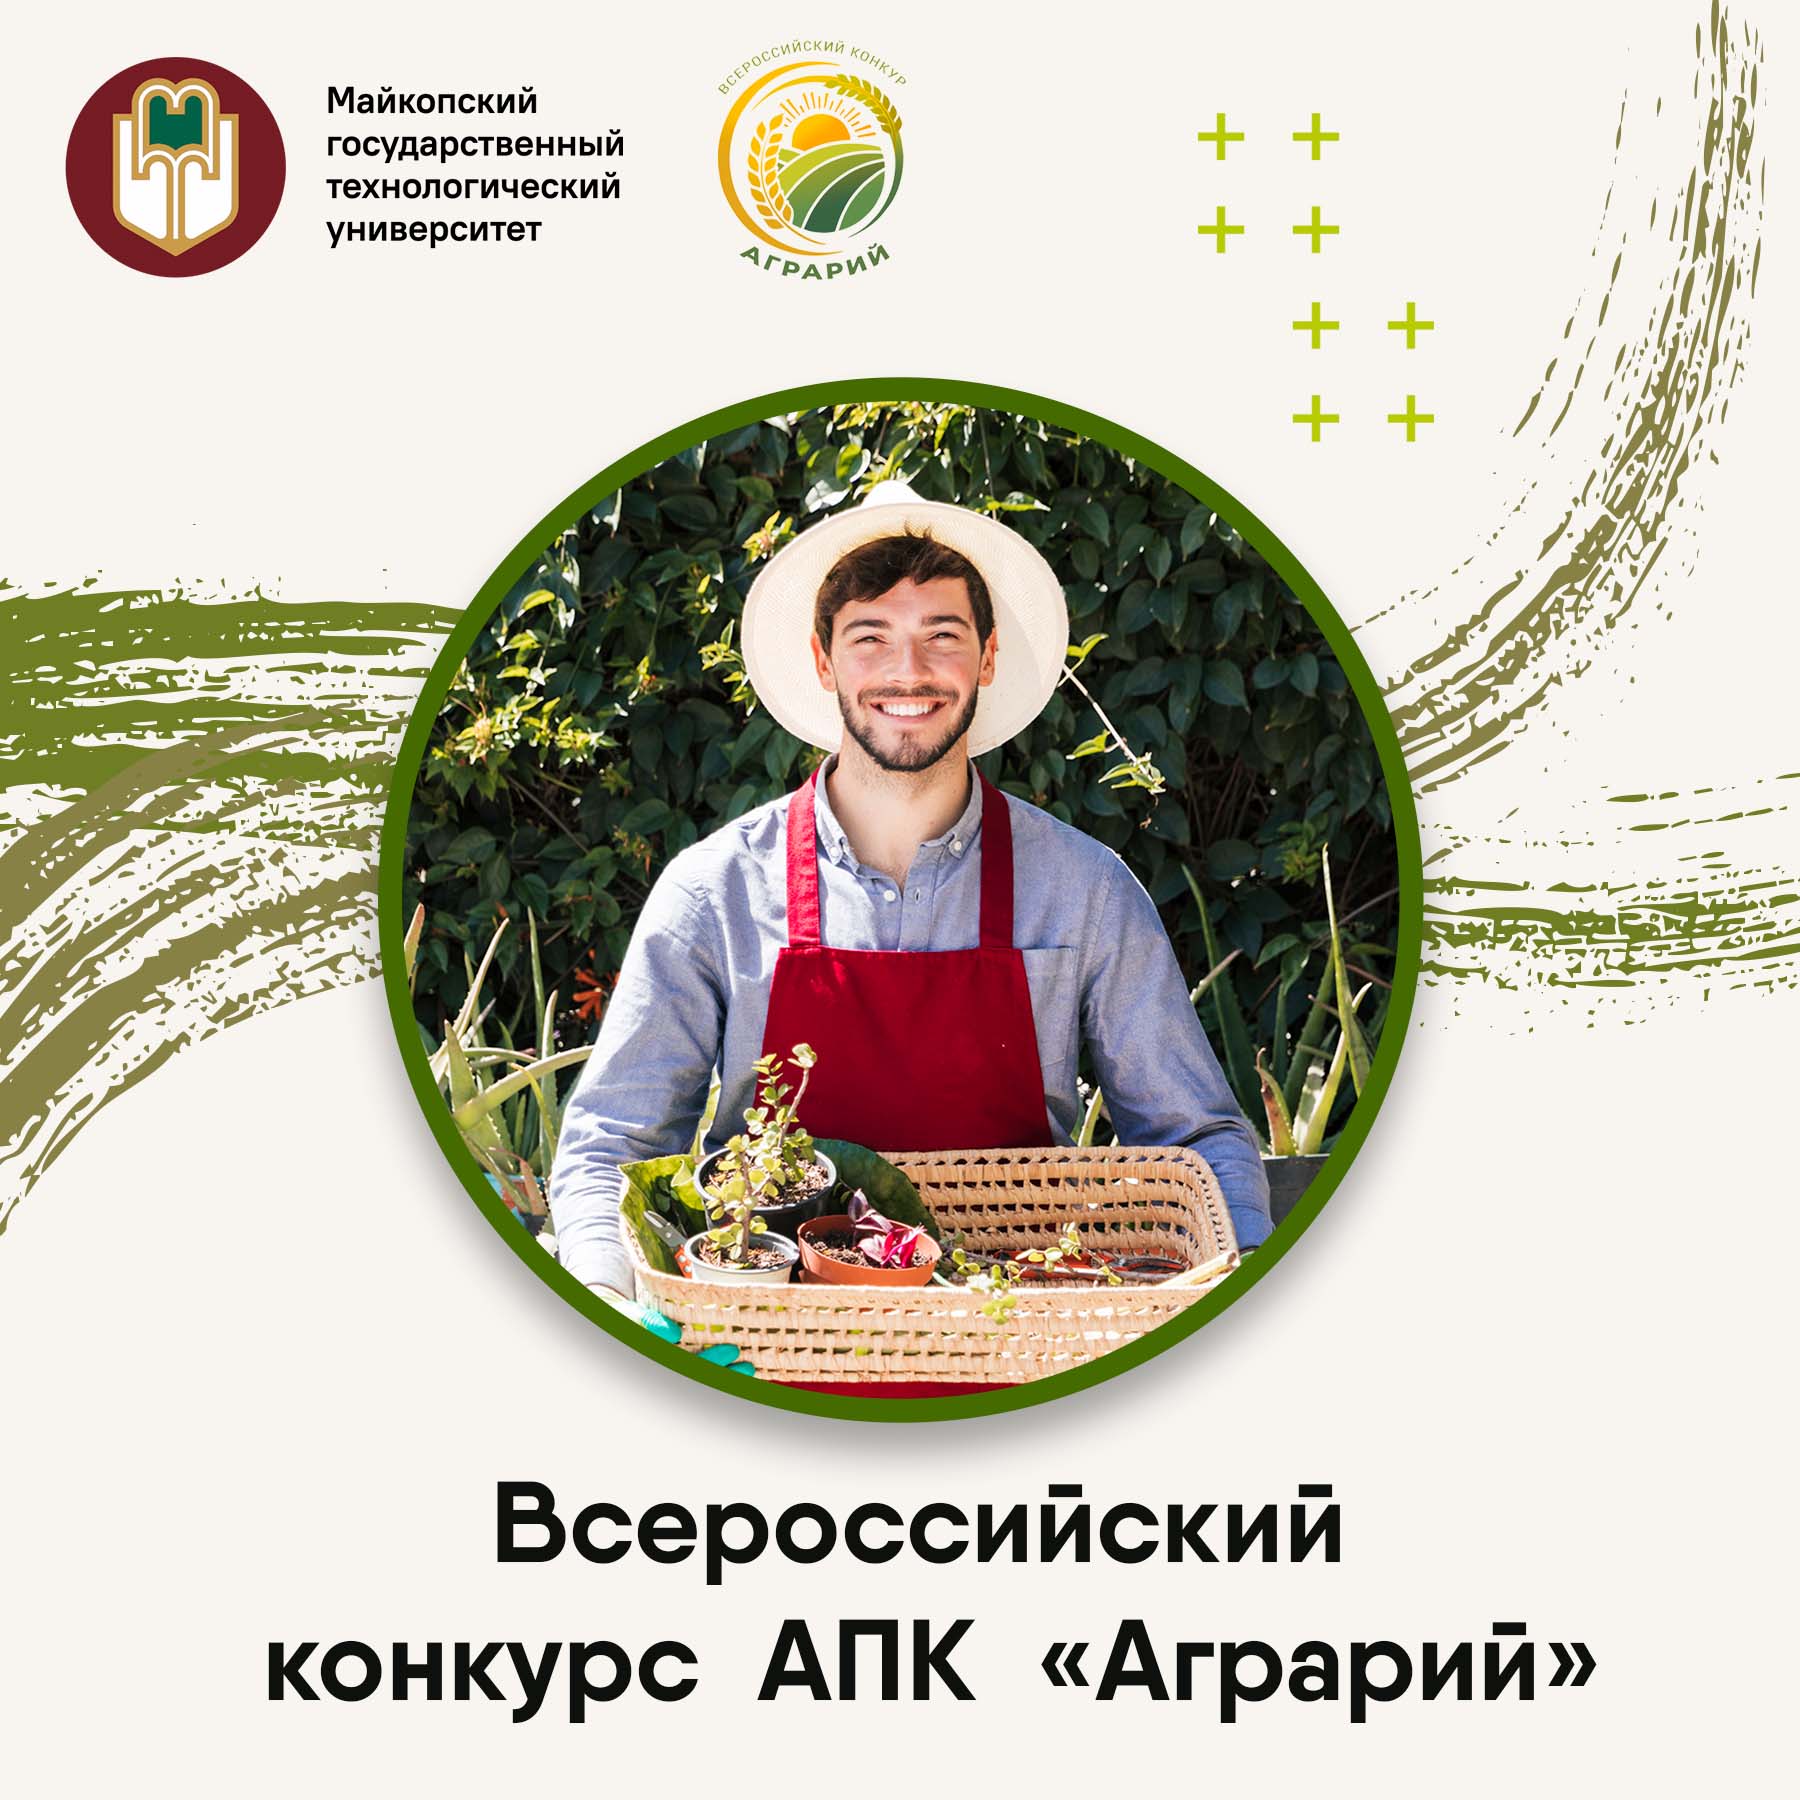 Стань участником ежегодного Всероссийского конкурса студенческих инициатив АПК «Аграрий»!